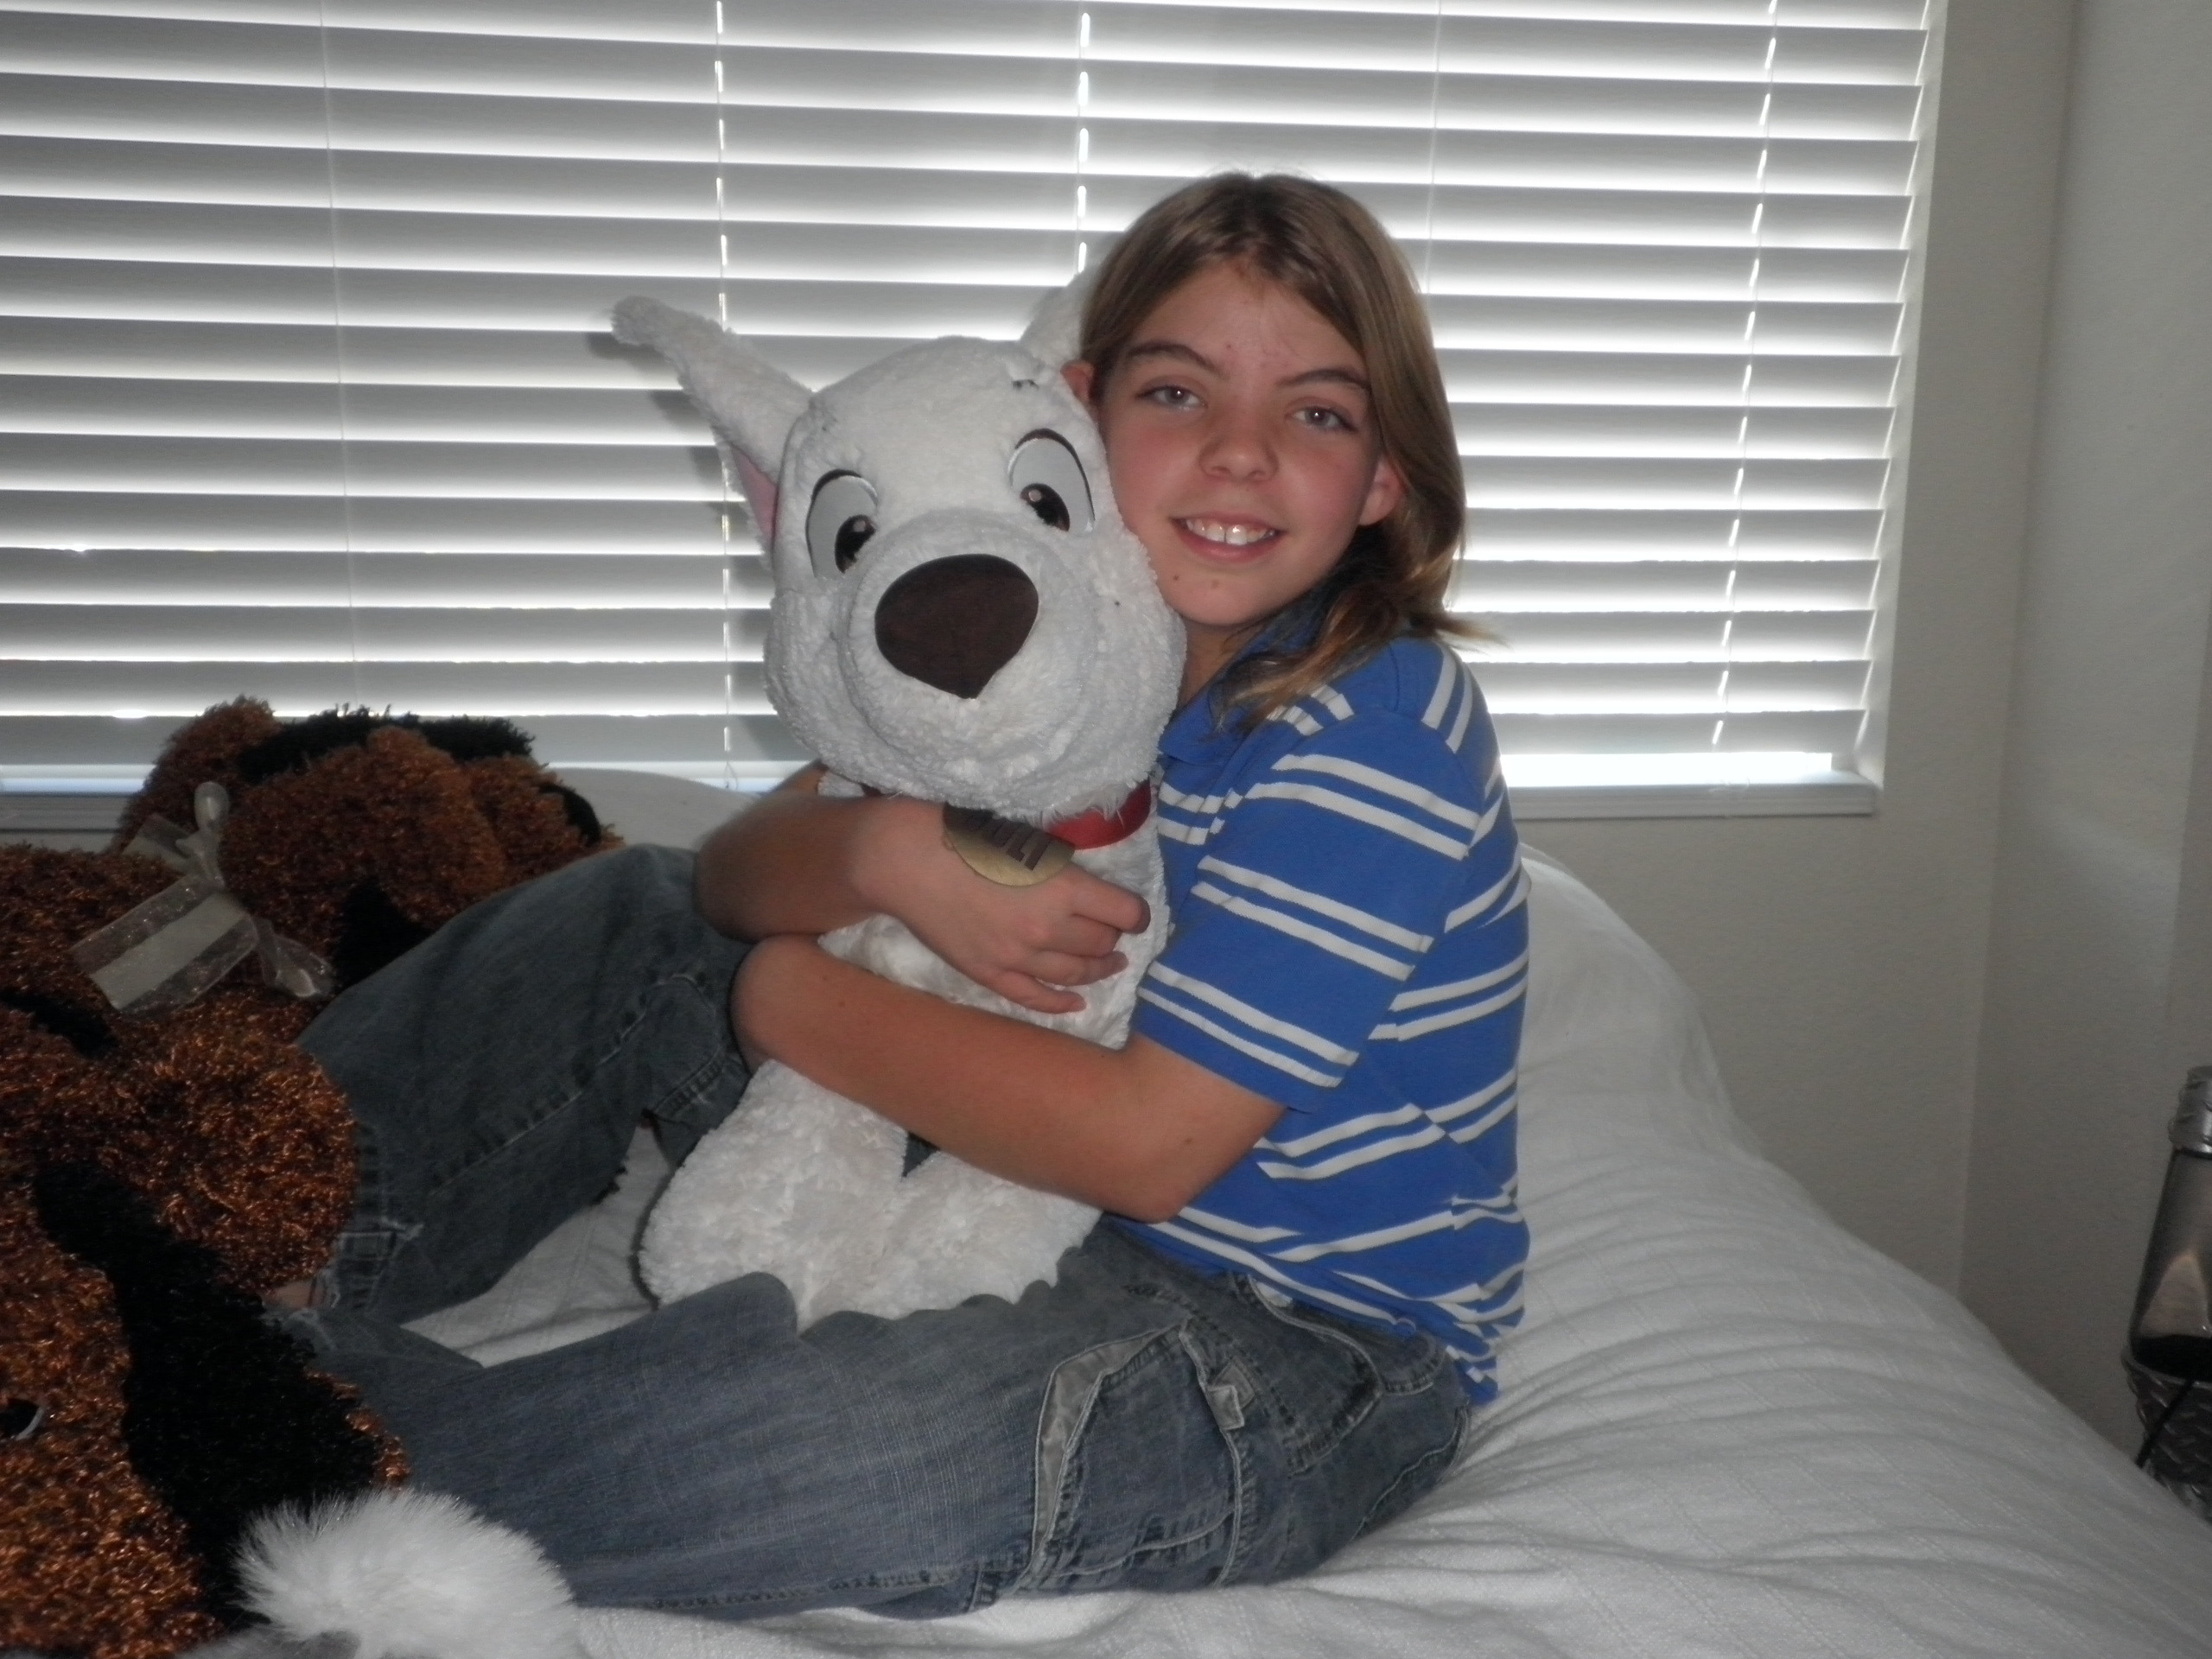 Me and my Bolt stuffed animal - UriahA Photo (9186594) - Fanpop